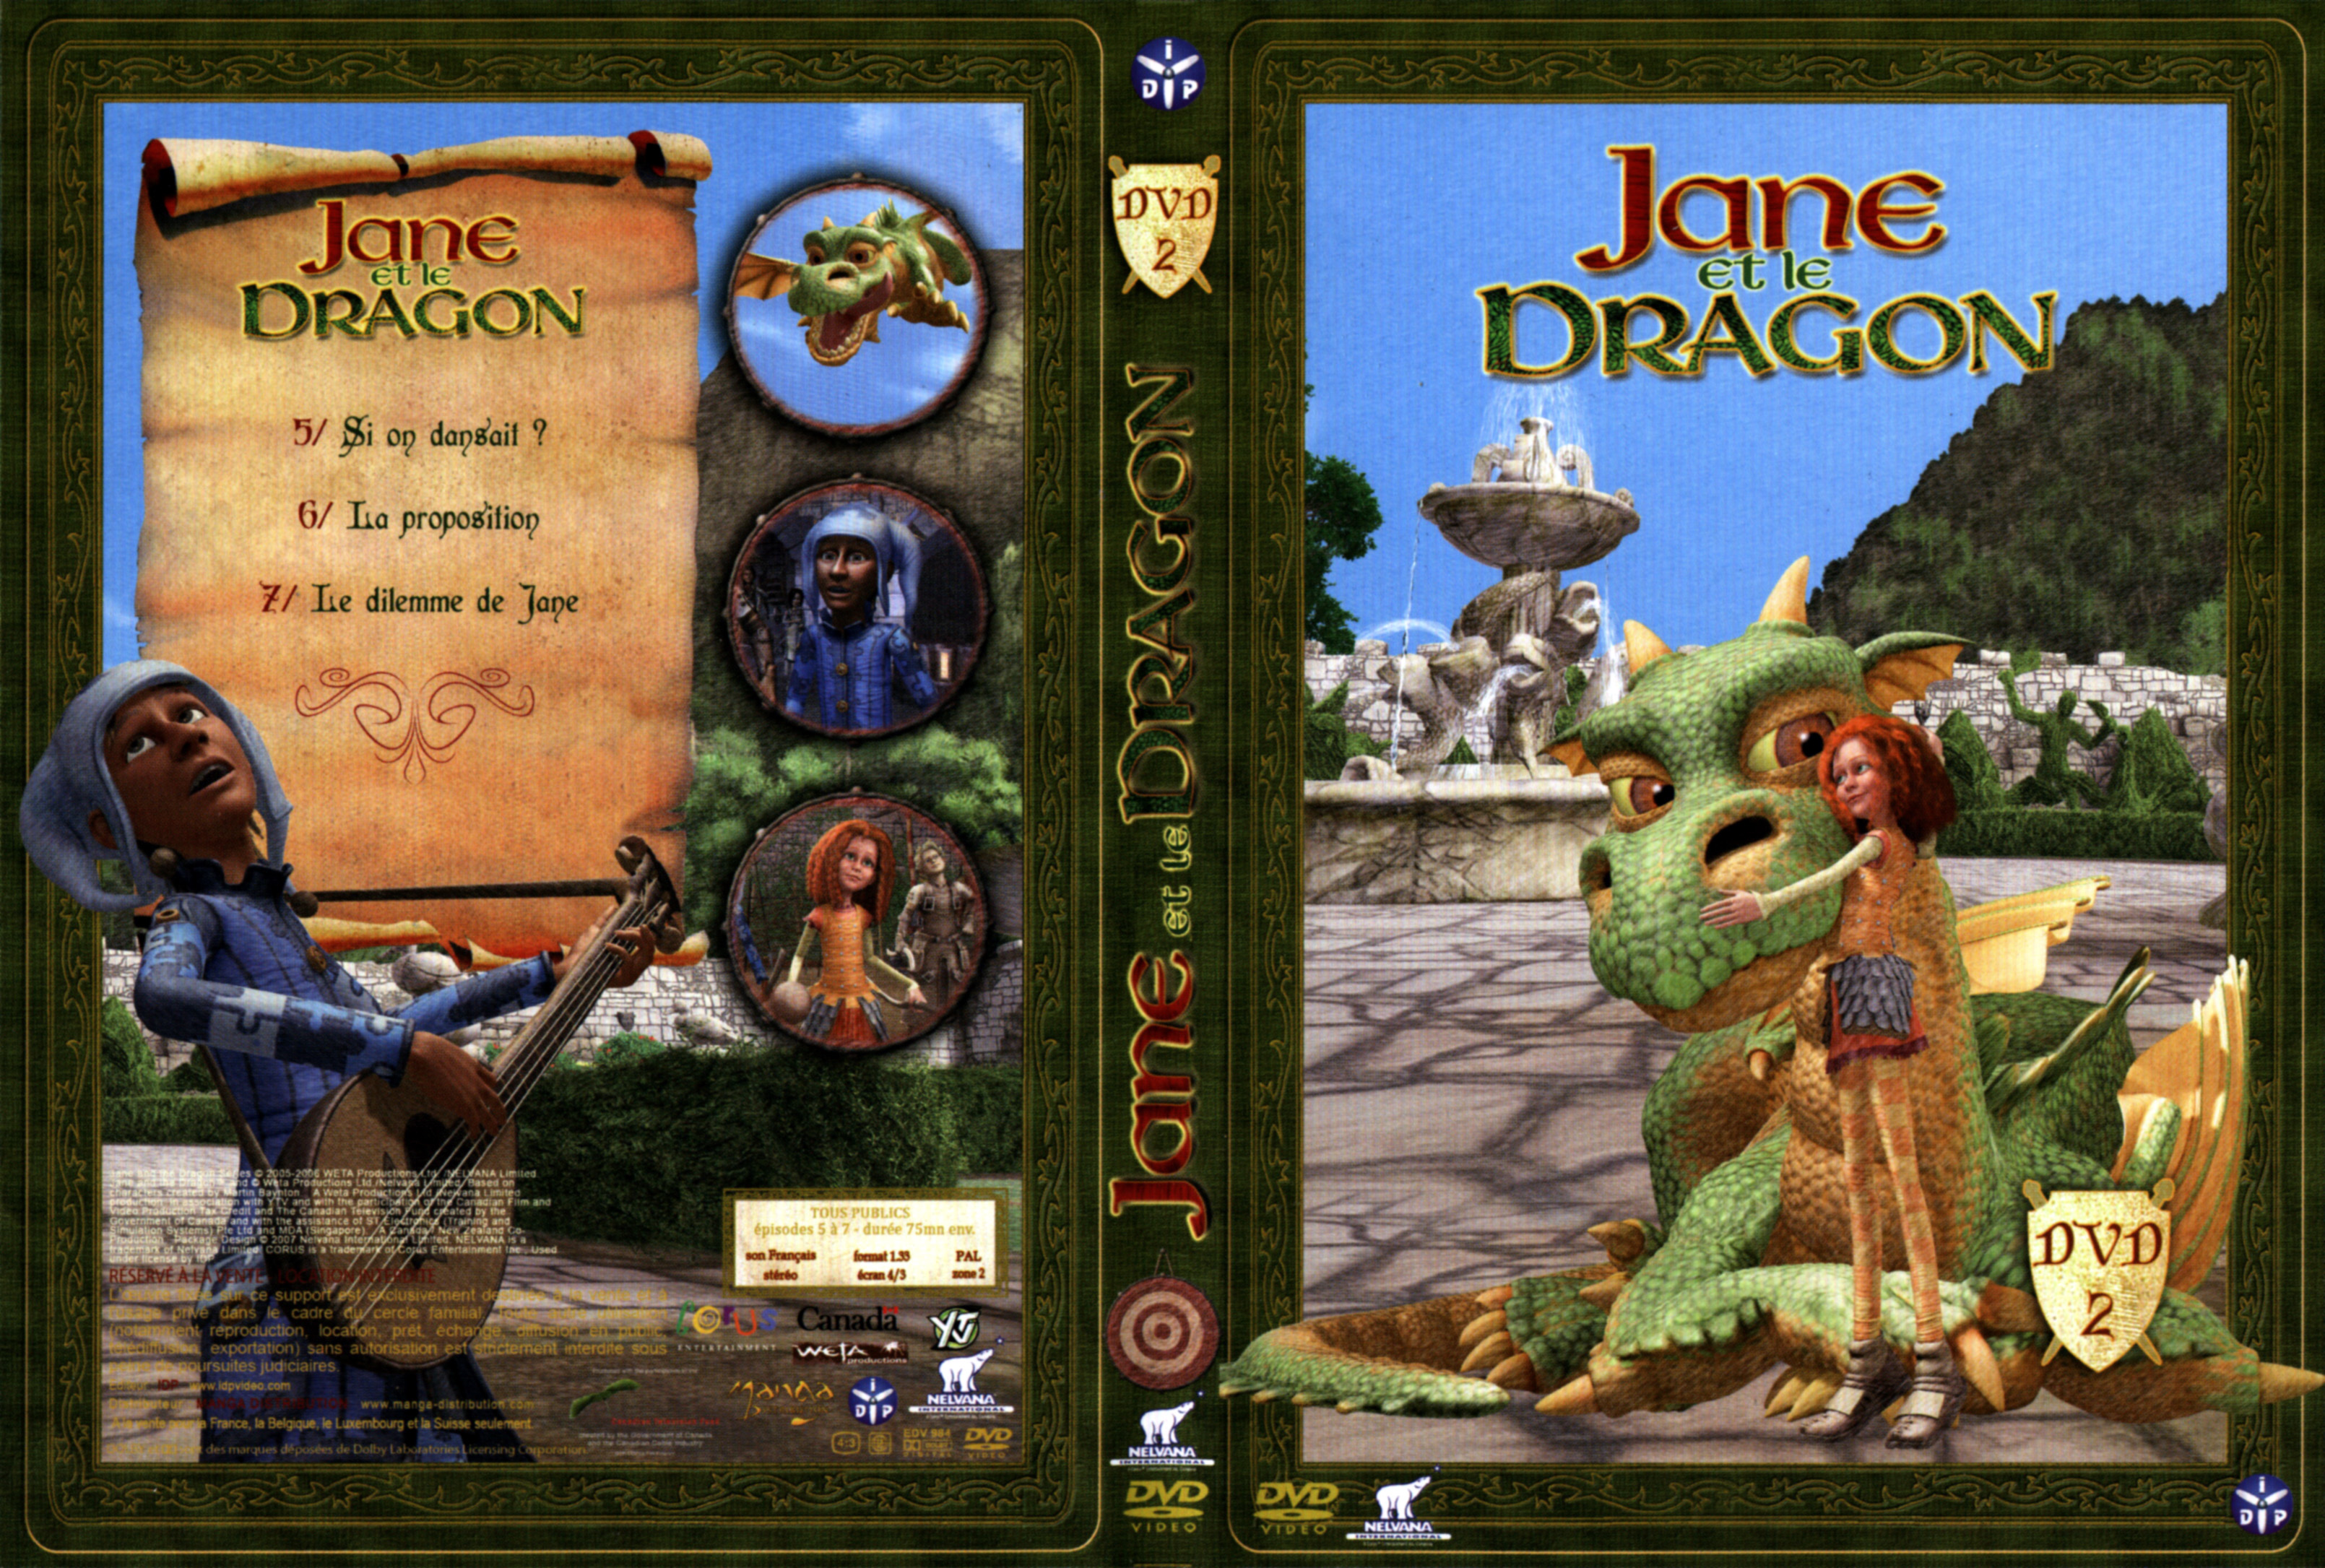 Jaquette DVD Jane et le Dragon vol 2